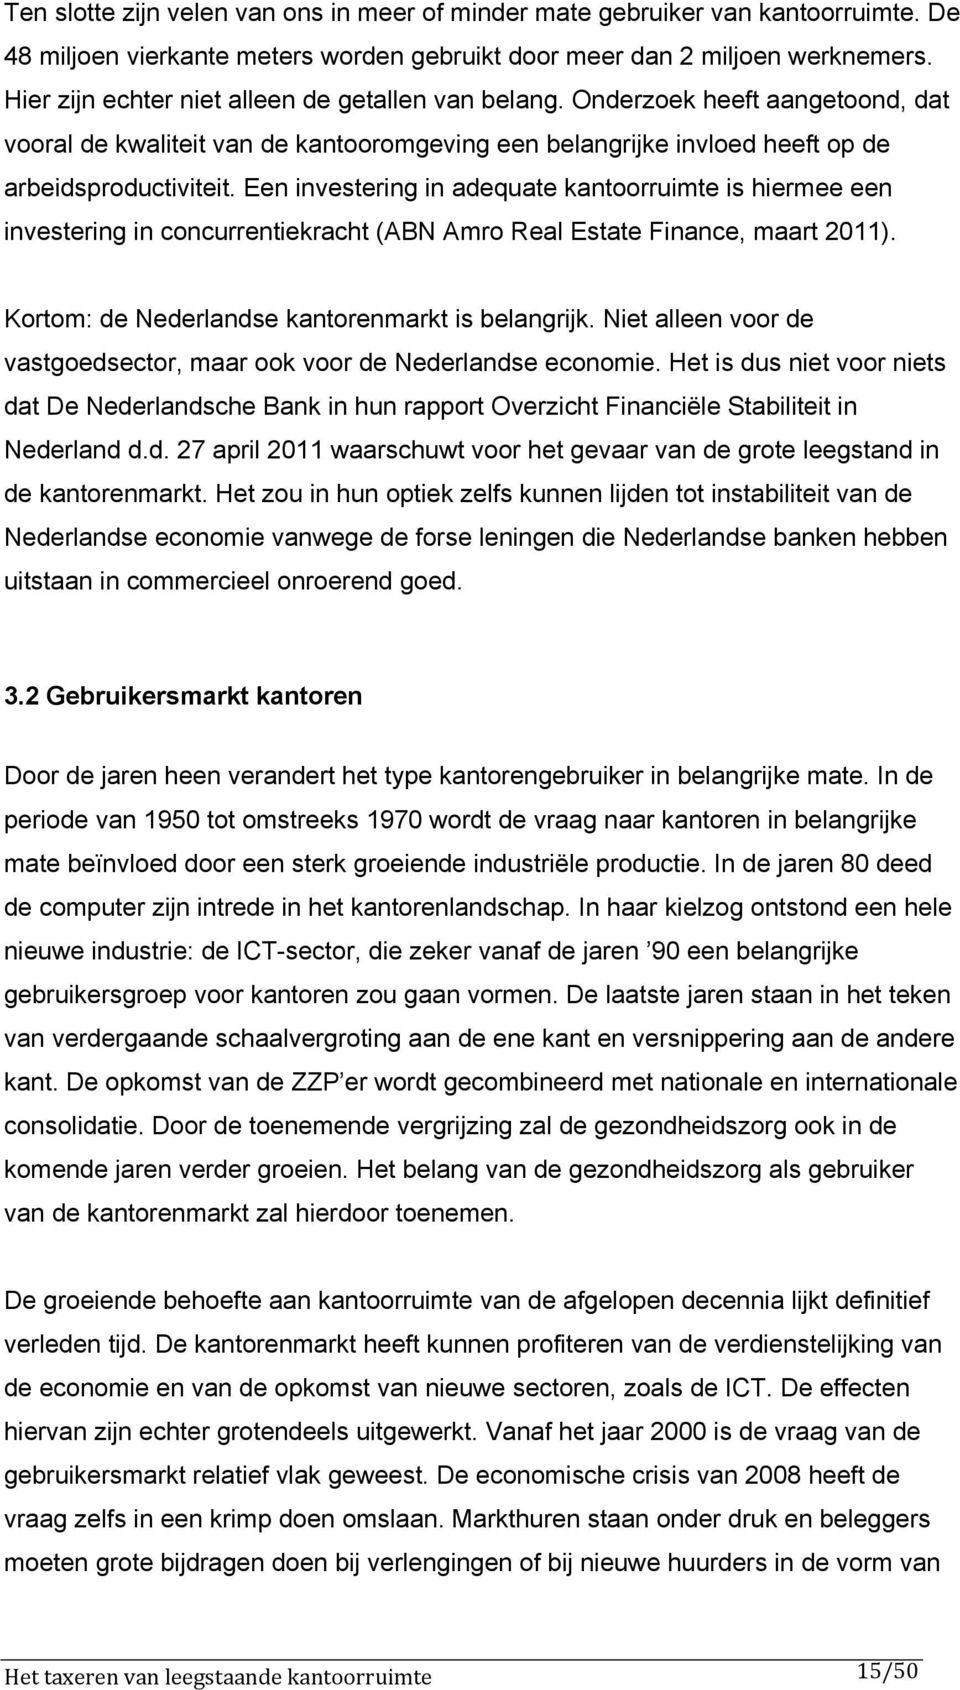 Een investering in adequate kantoorruimte is hiermee een investering in concurrentiekracht (ABN Amro Real Estate Finance, maart 2011). Kortom: de Nederlandse kantorenmarkt is belangrijk.